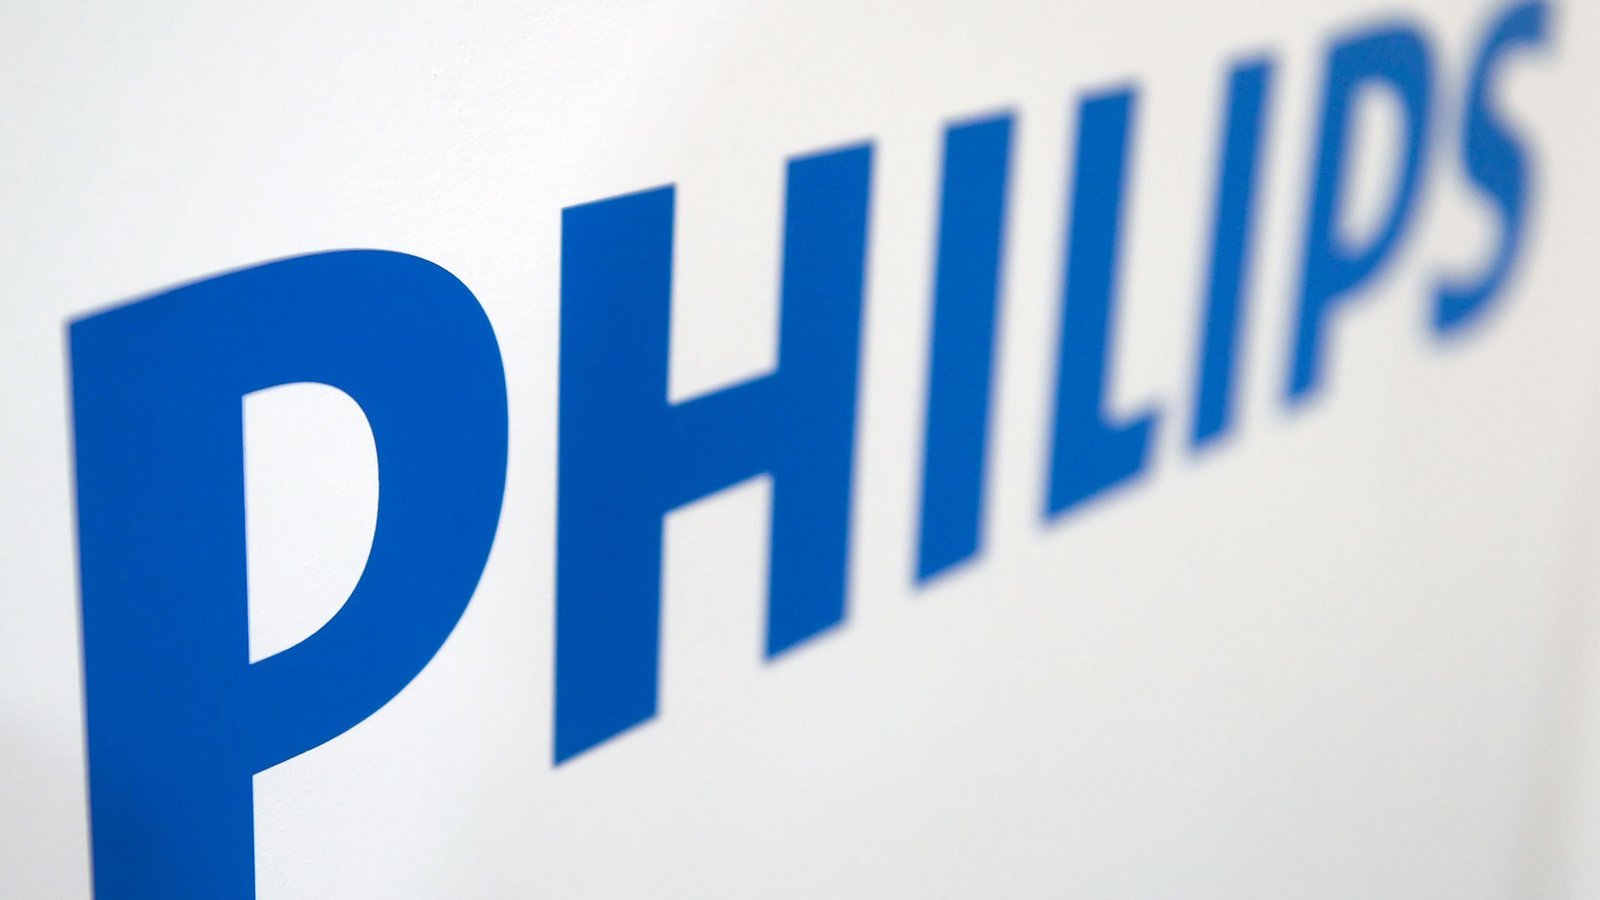 Der angeschlagene Medizintechnikhersteller Philips will tausende Stellen abbauen.Foto: picture alliance / dpa